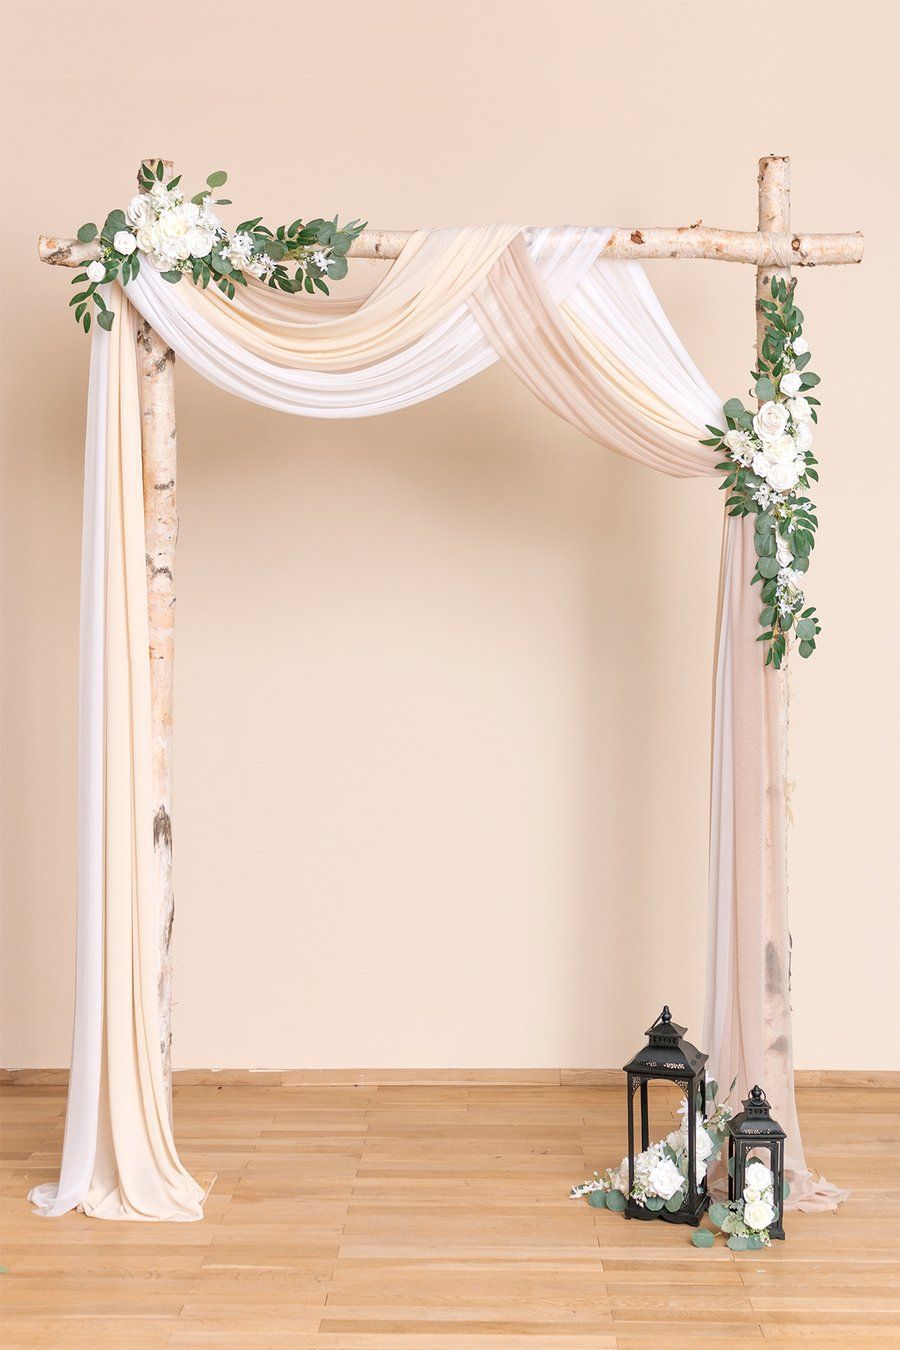 Wedding Arch Drapping Fabric 30 - Wedding Arch Drapping Fabric 30 -   17 diy Wedding arch ideas